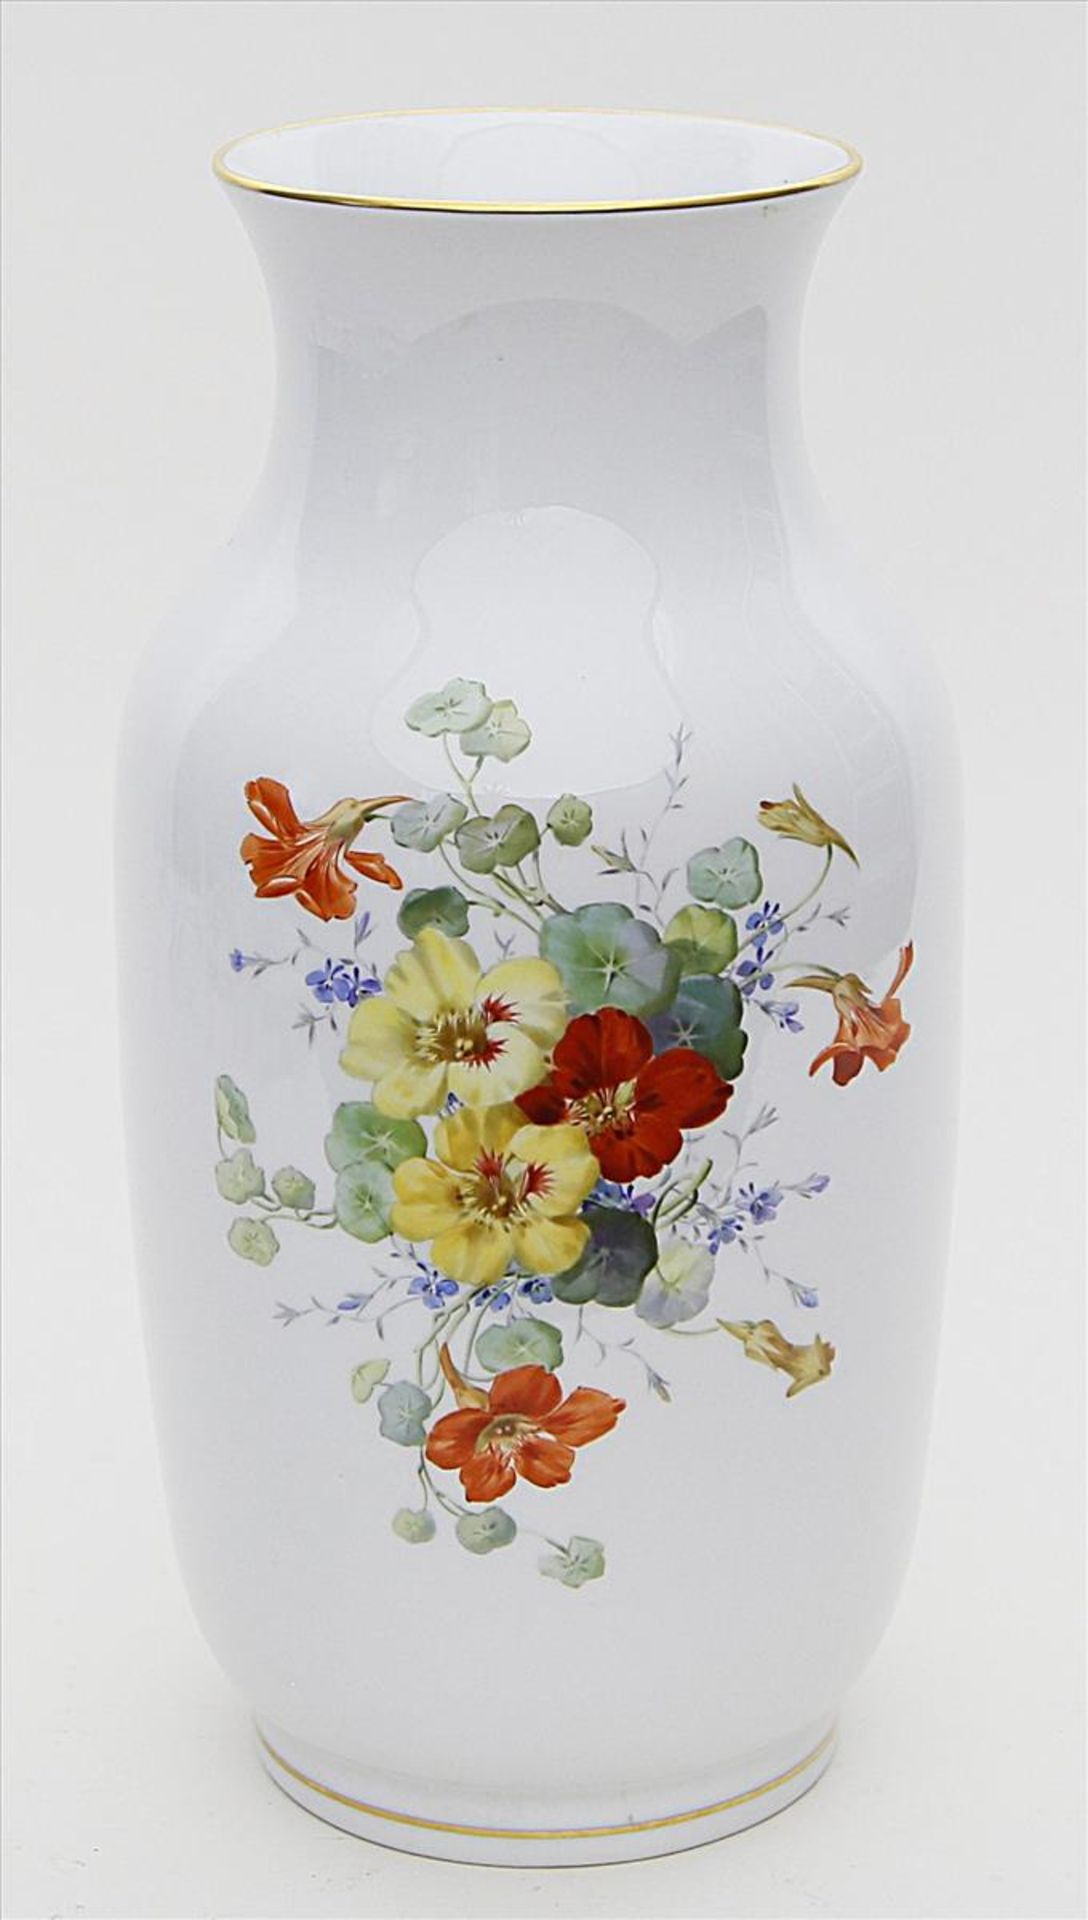 Große Vase, Meissen.Balusterform. Qualitätvolle bunte Blumenbouquetmalerei mit Kapuzinerkresse.